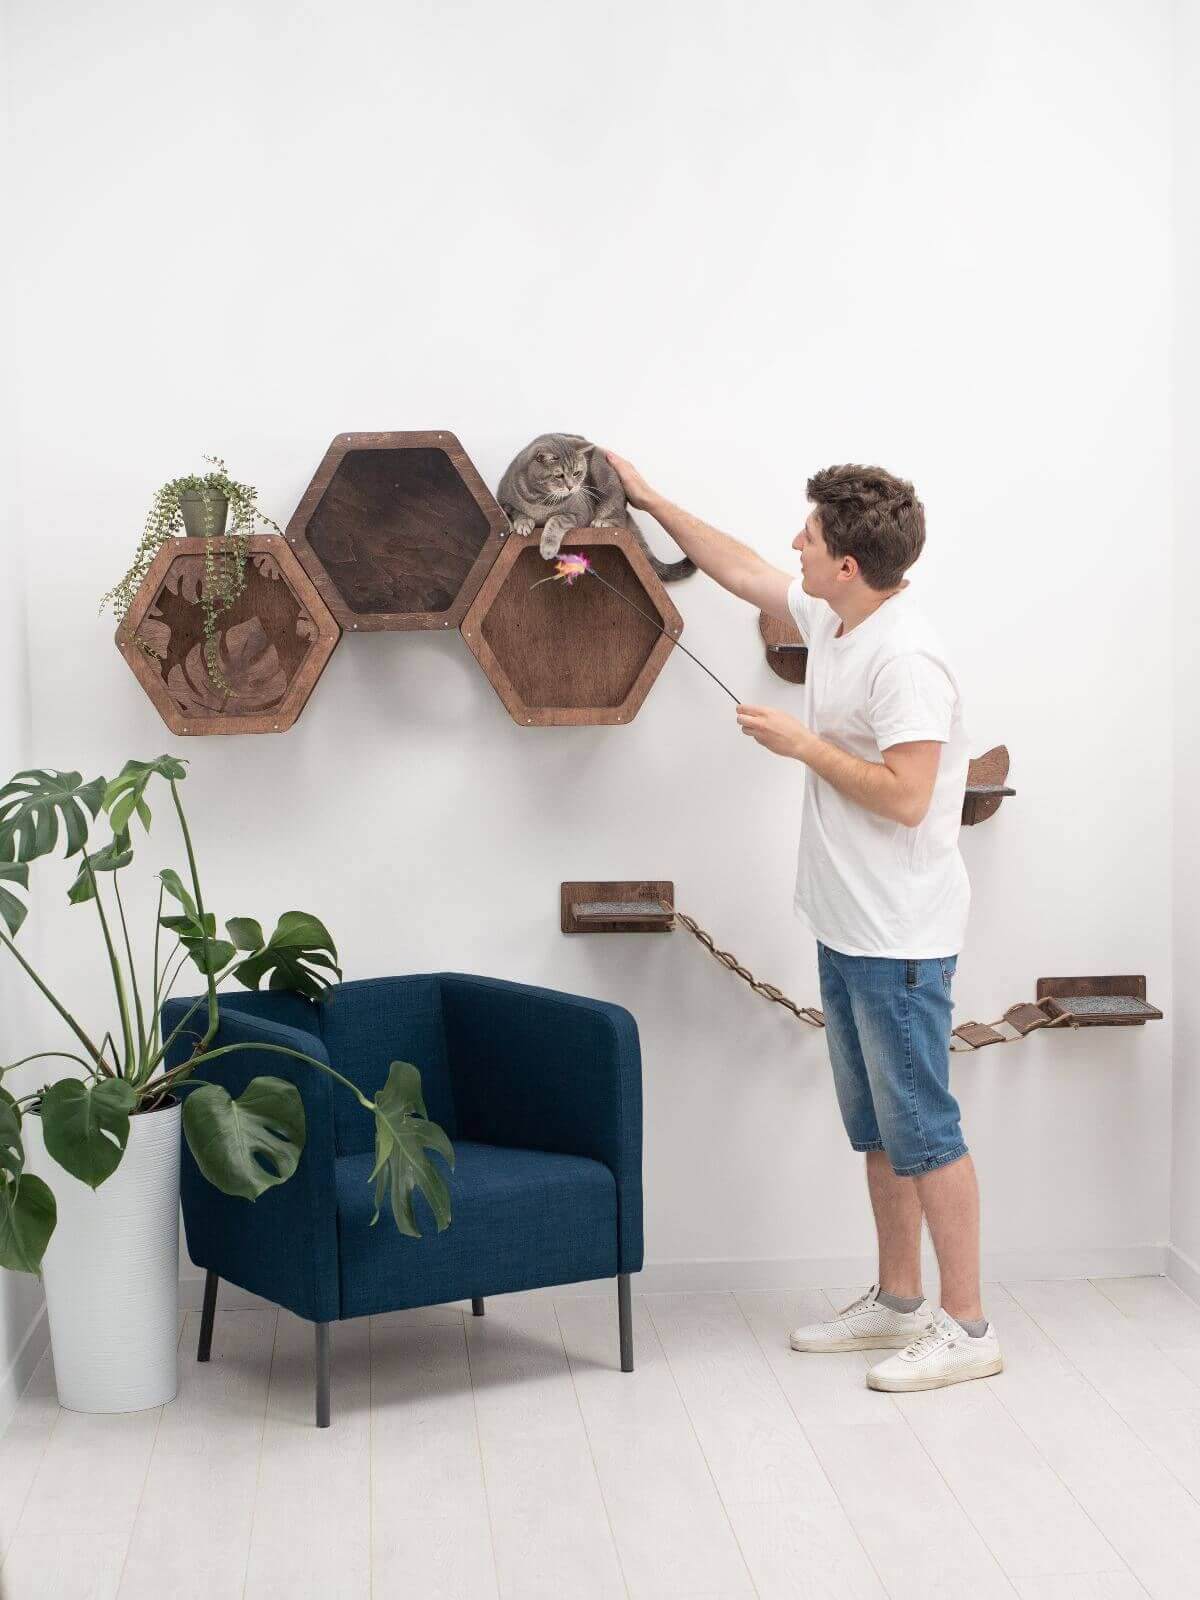 cat shelves hexagon shape made from wood